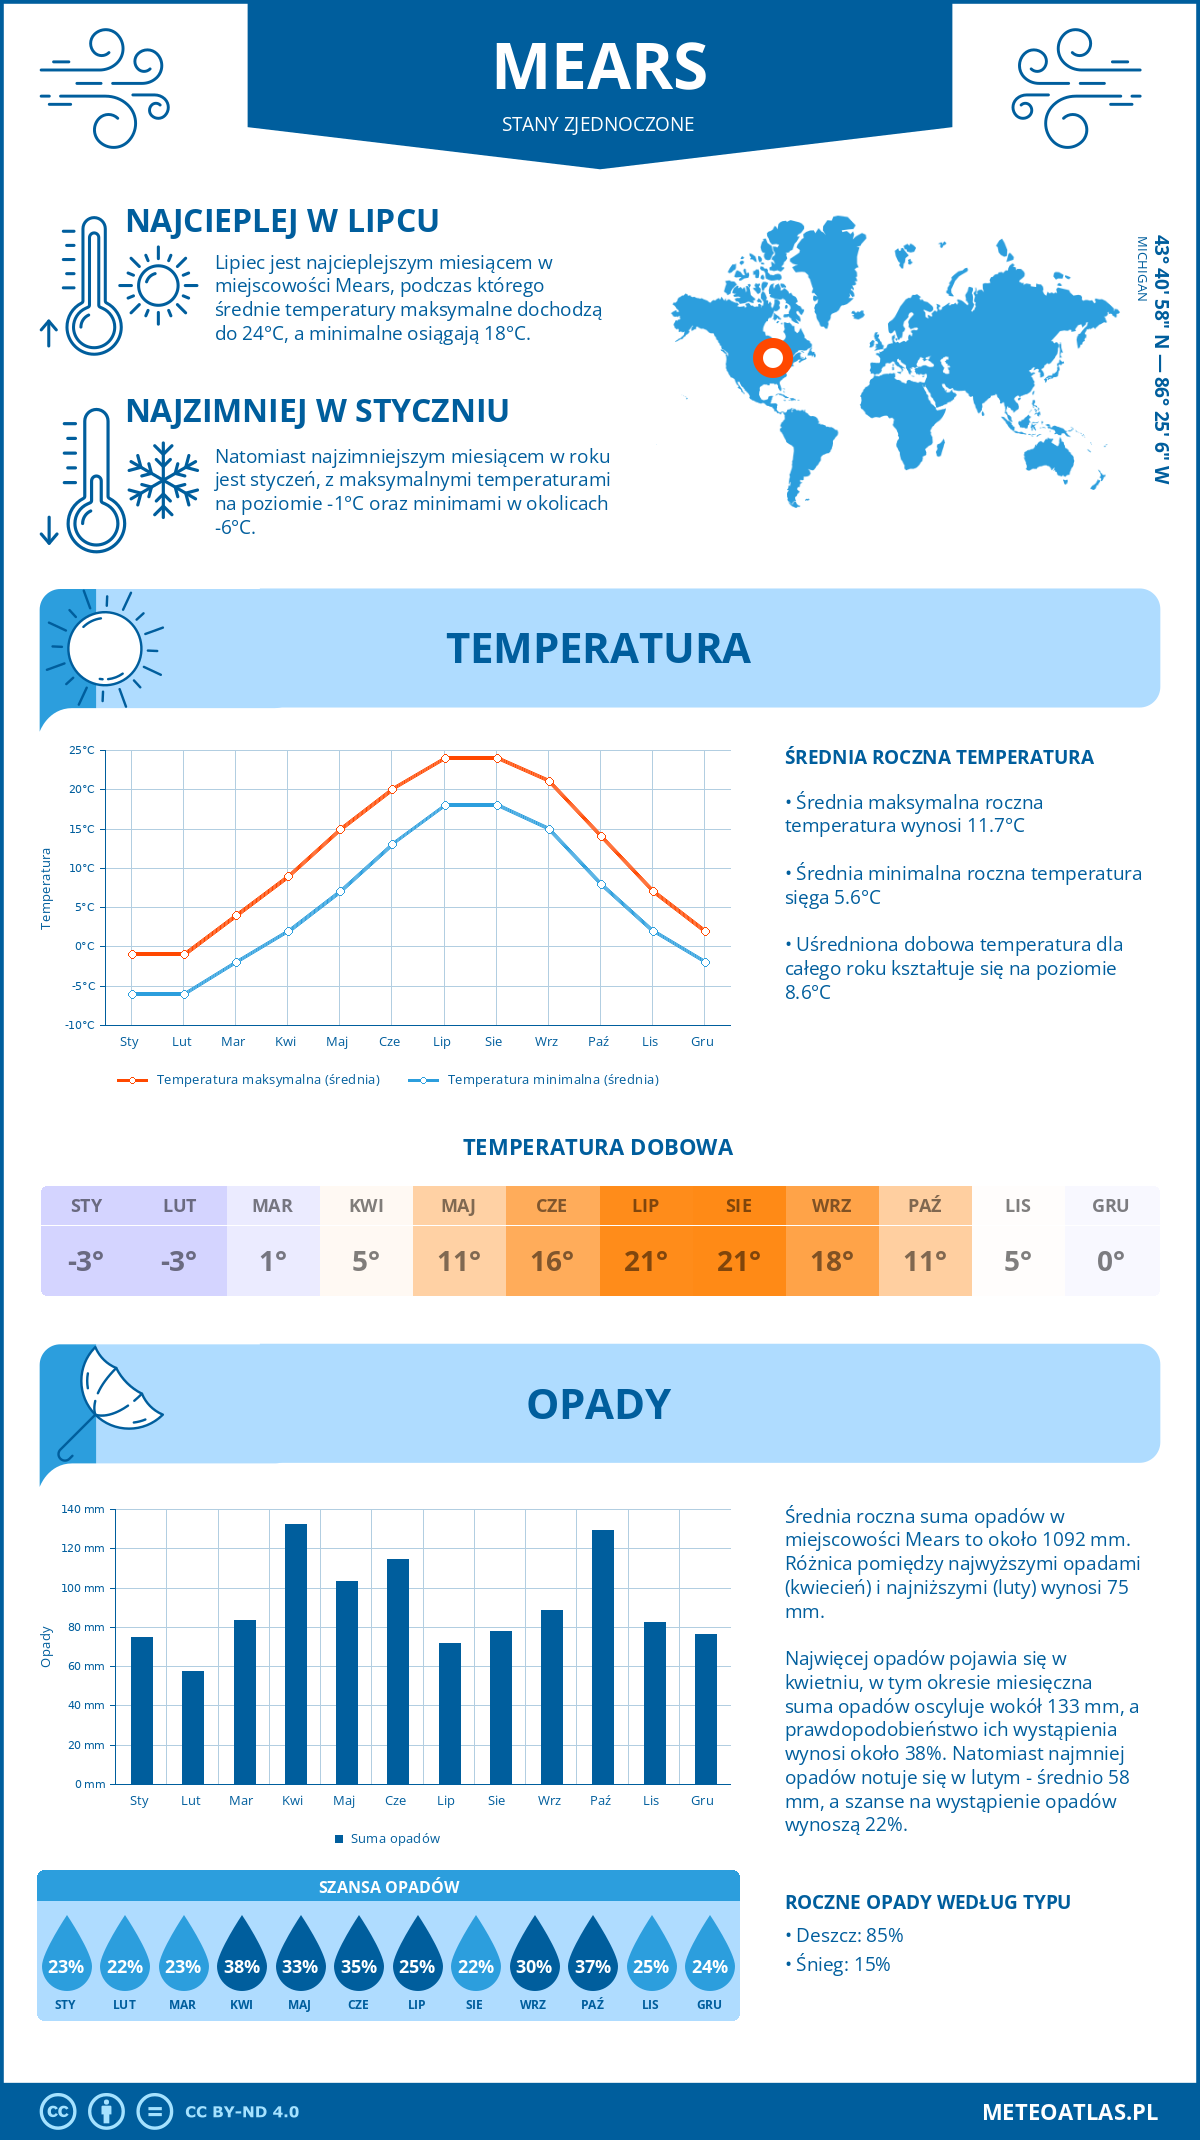 Pogoda Mears (Stany Zjednoczone). Temperatura oraz opady.